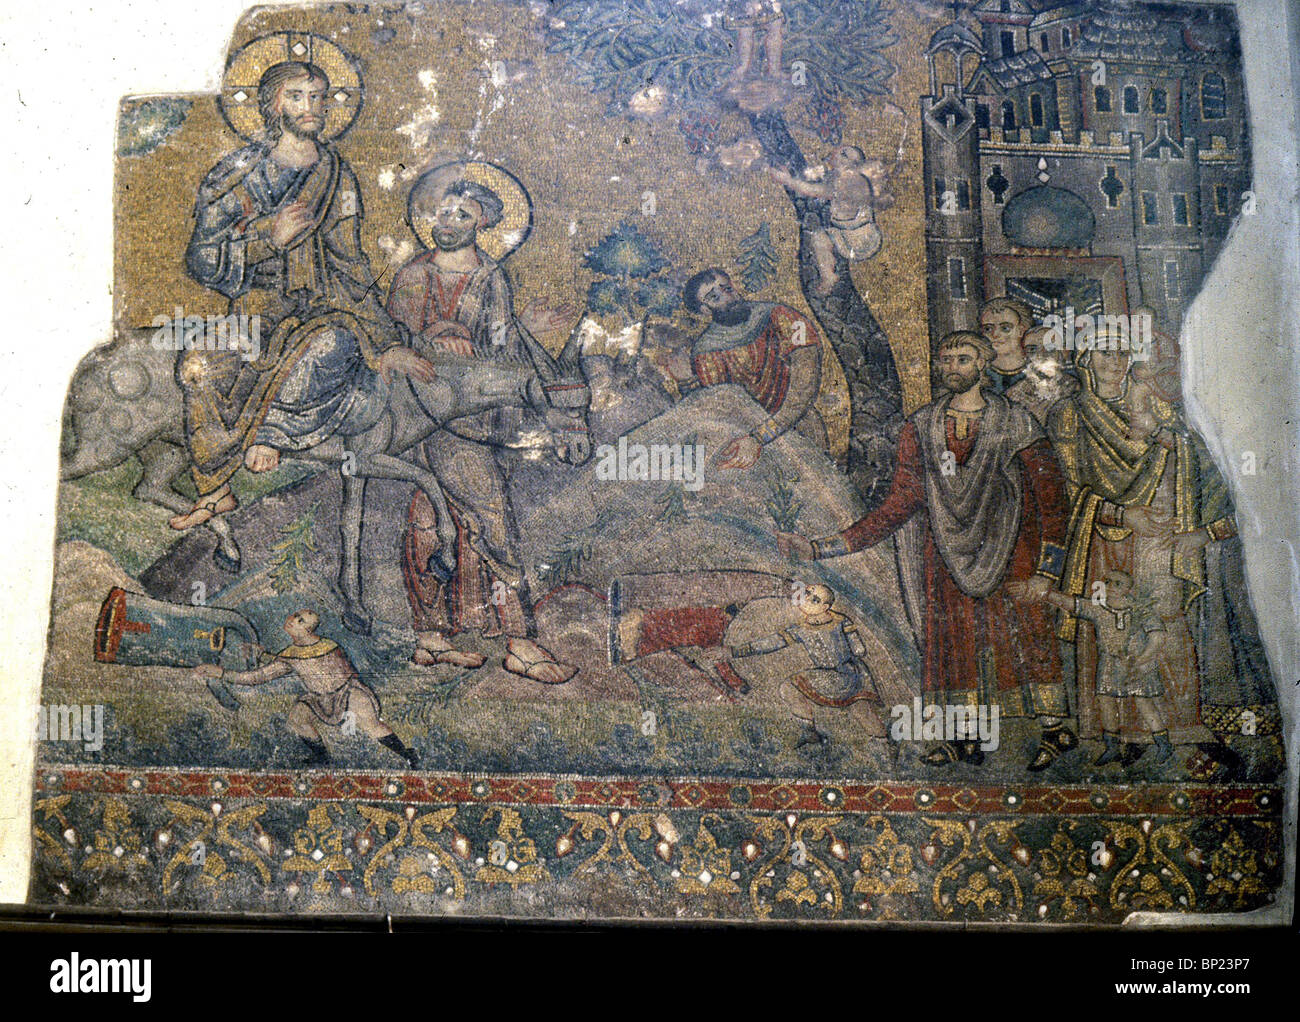 CRUSSADER mosaico nella chiesa della Natività. Osanna significato: colui che viene nel nome del Signore persone utilizzato per salutare Gesù Foto Stock